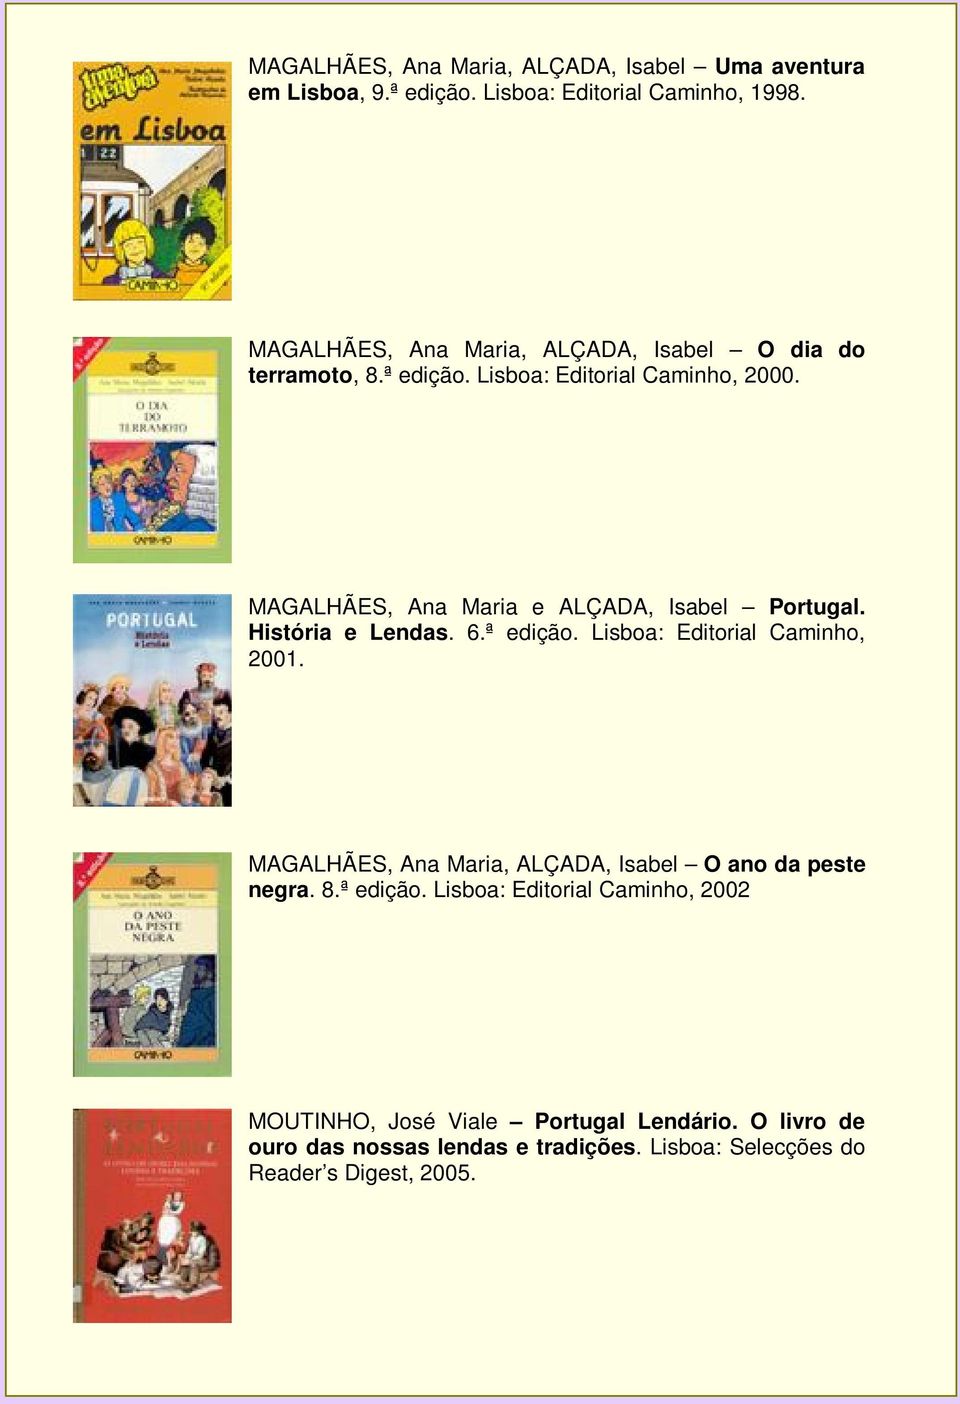 MAGALHÃES, Ana Maria e ALÇADA, Isabel Portugal. História e Lendas. 6.ª edição. Lisboa: Editorial Caminho, 2001.